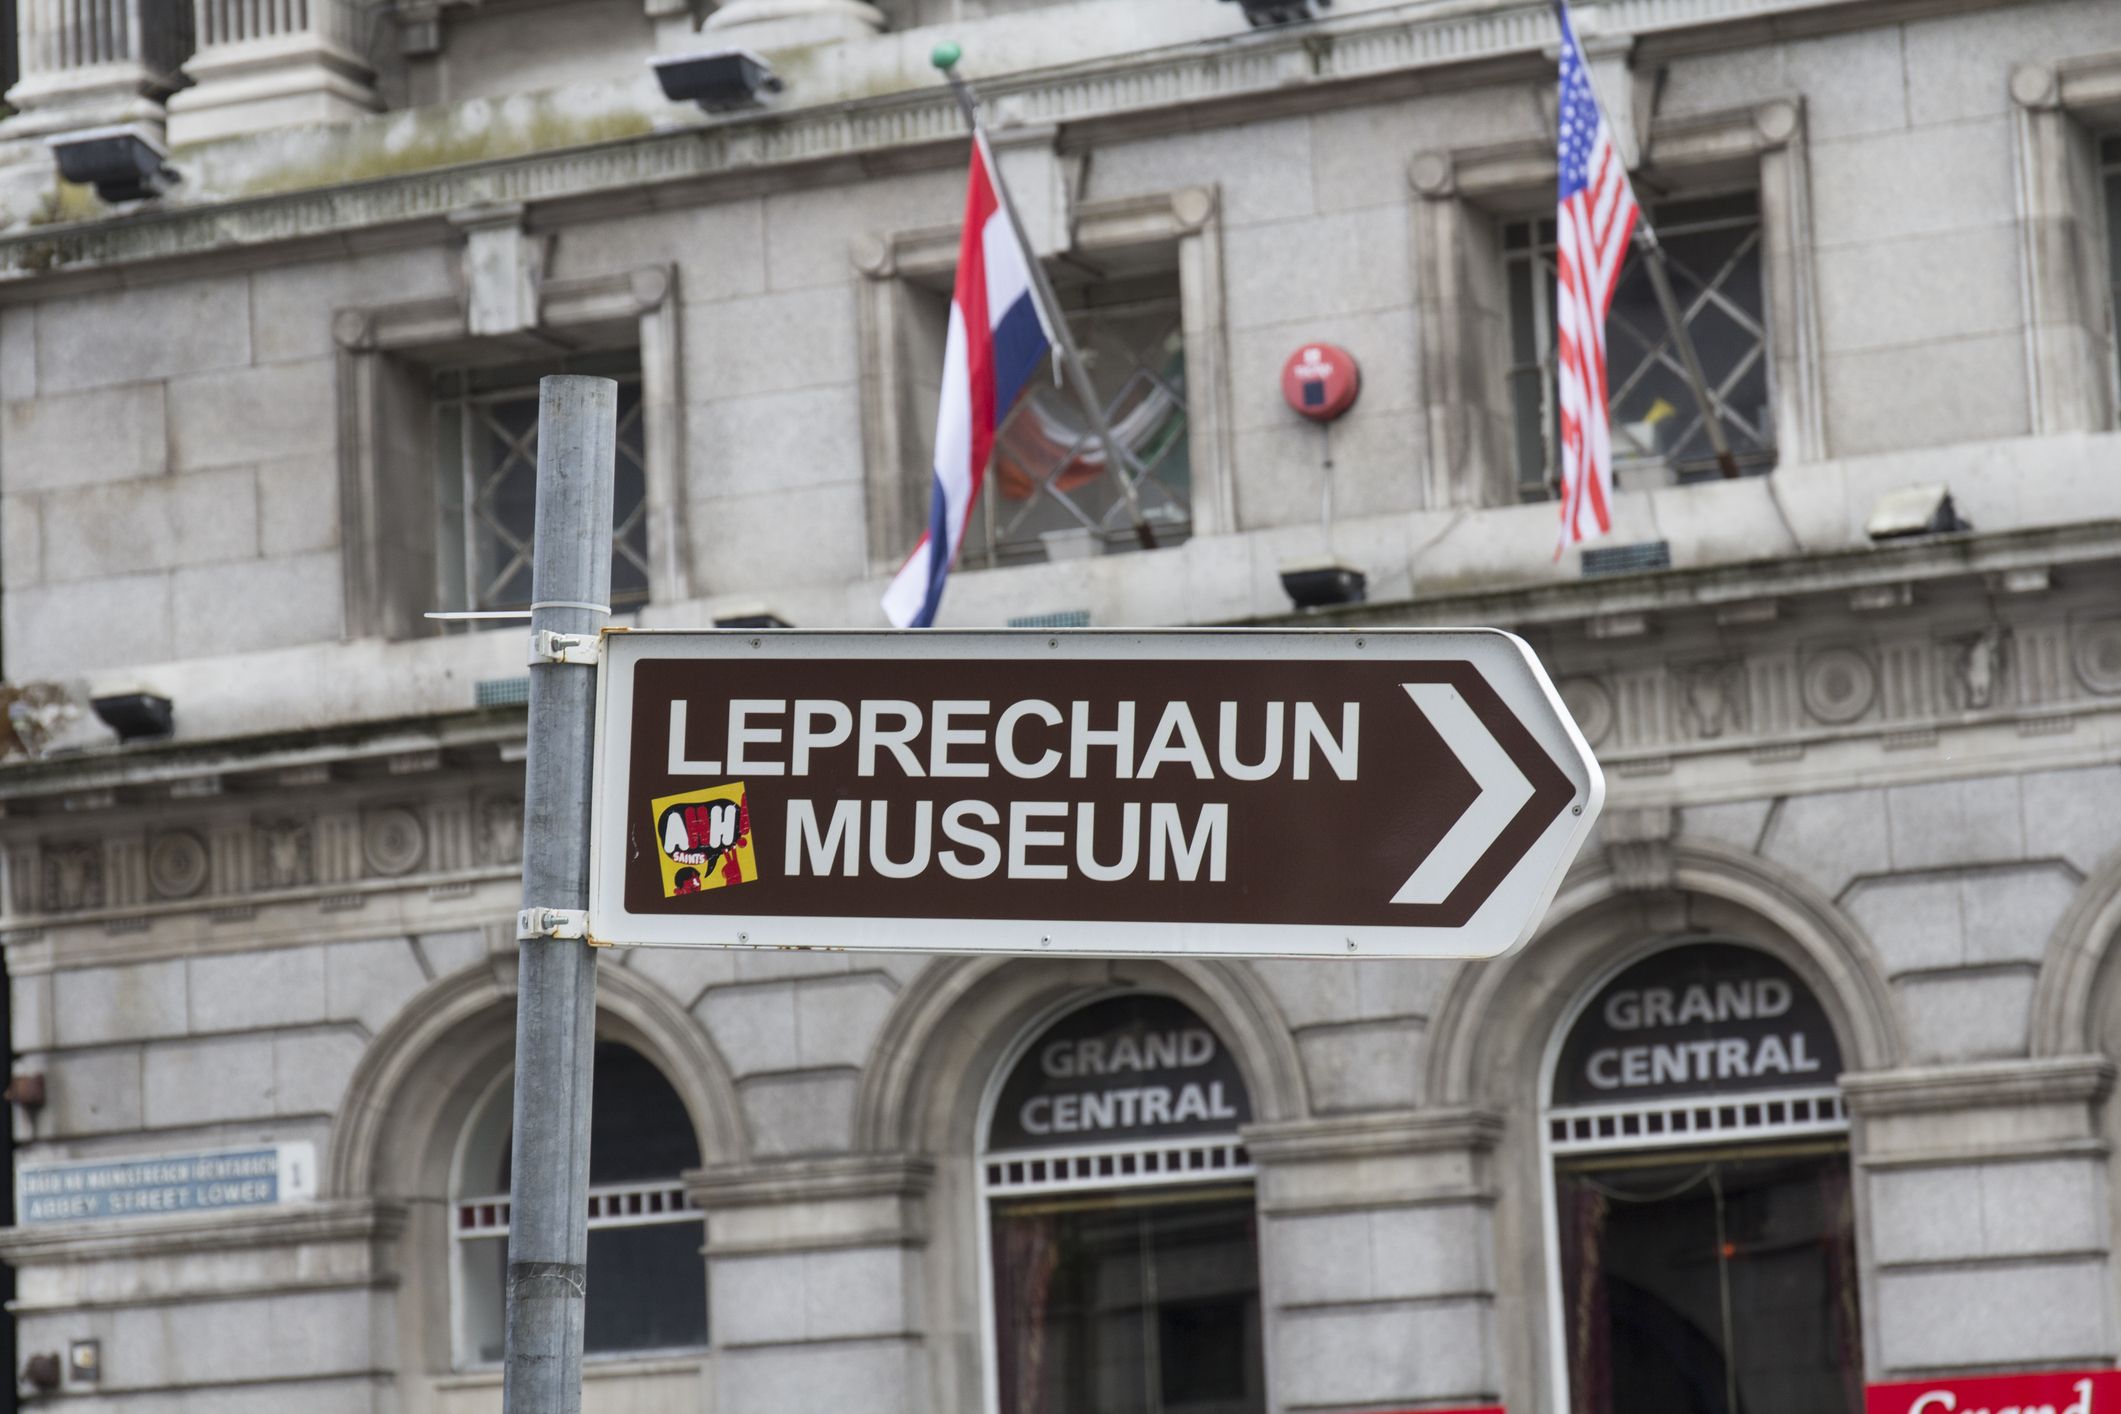 Museu Nacional do Leprechaun em Dublin, Irlanda